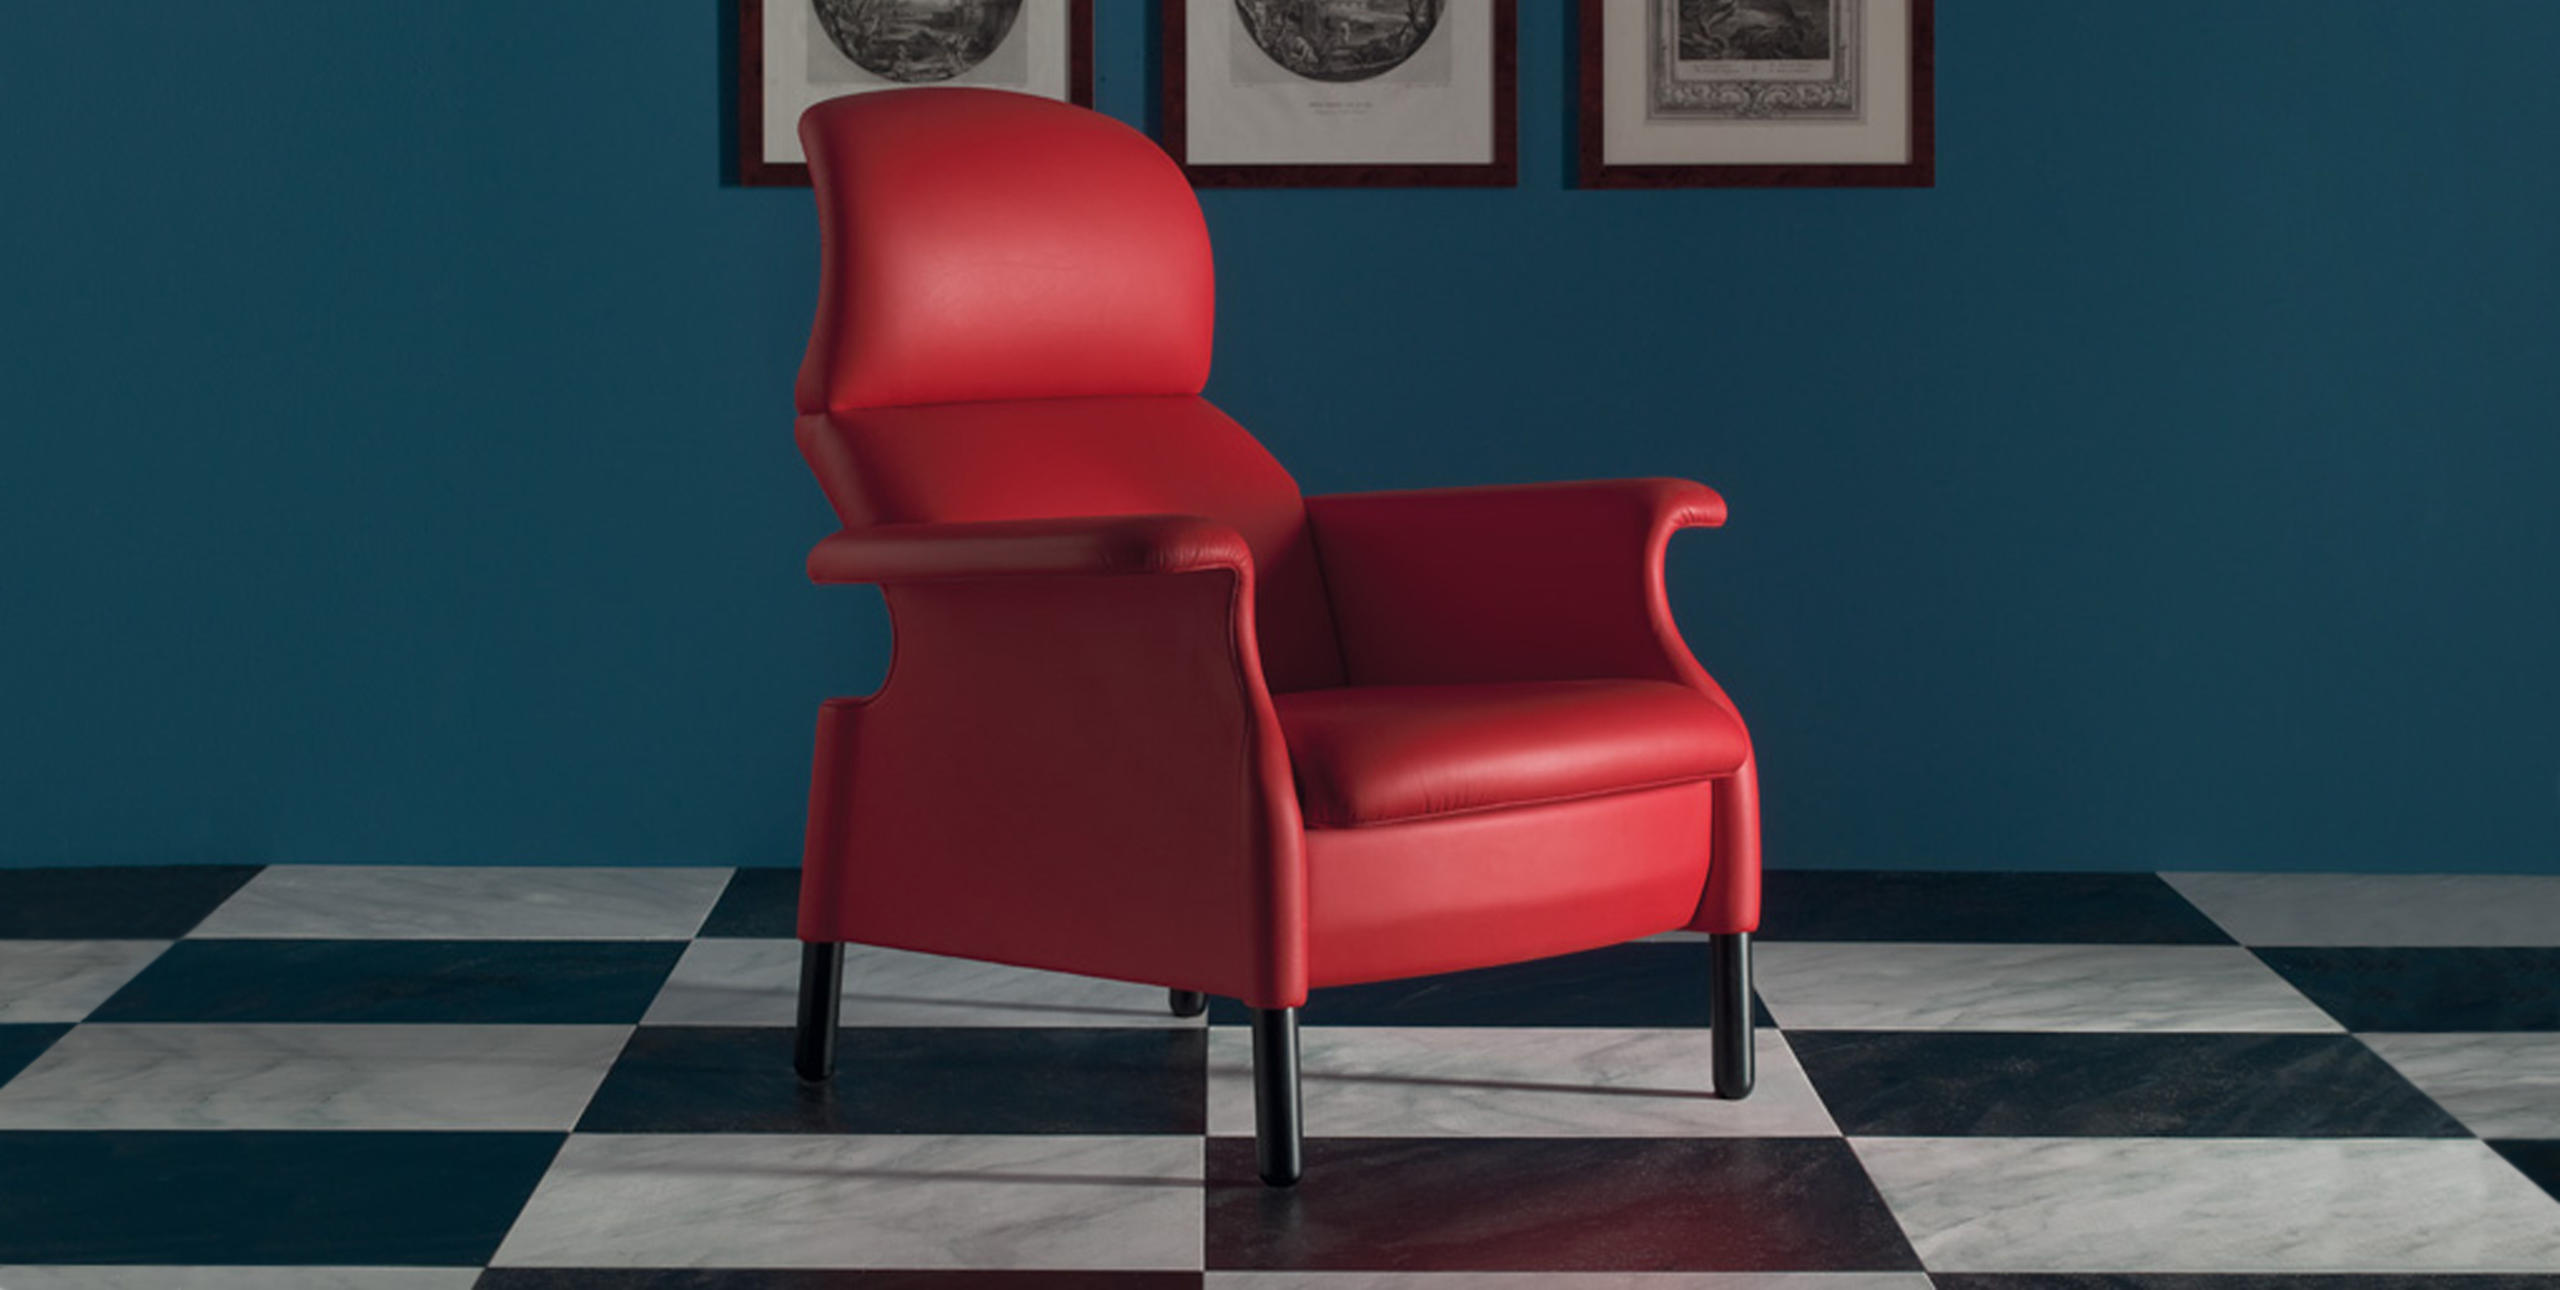 Sanluca Chair by Achille Castiglioni & Pier Giacomo Castiglioni for Poltrona Frau